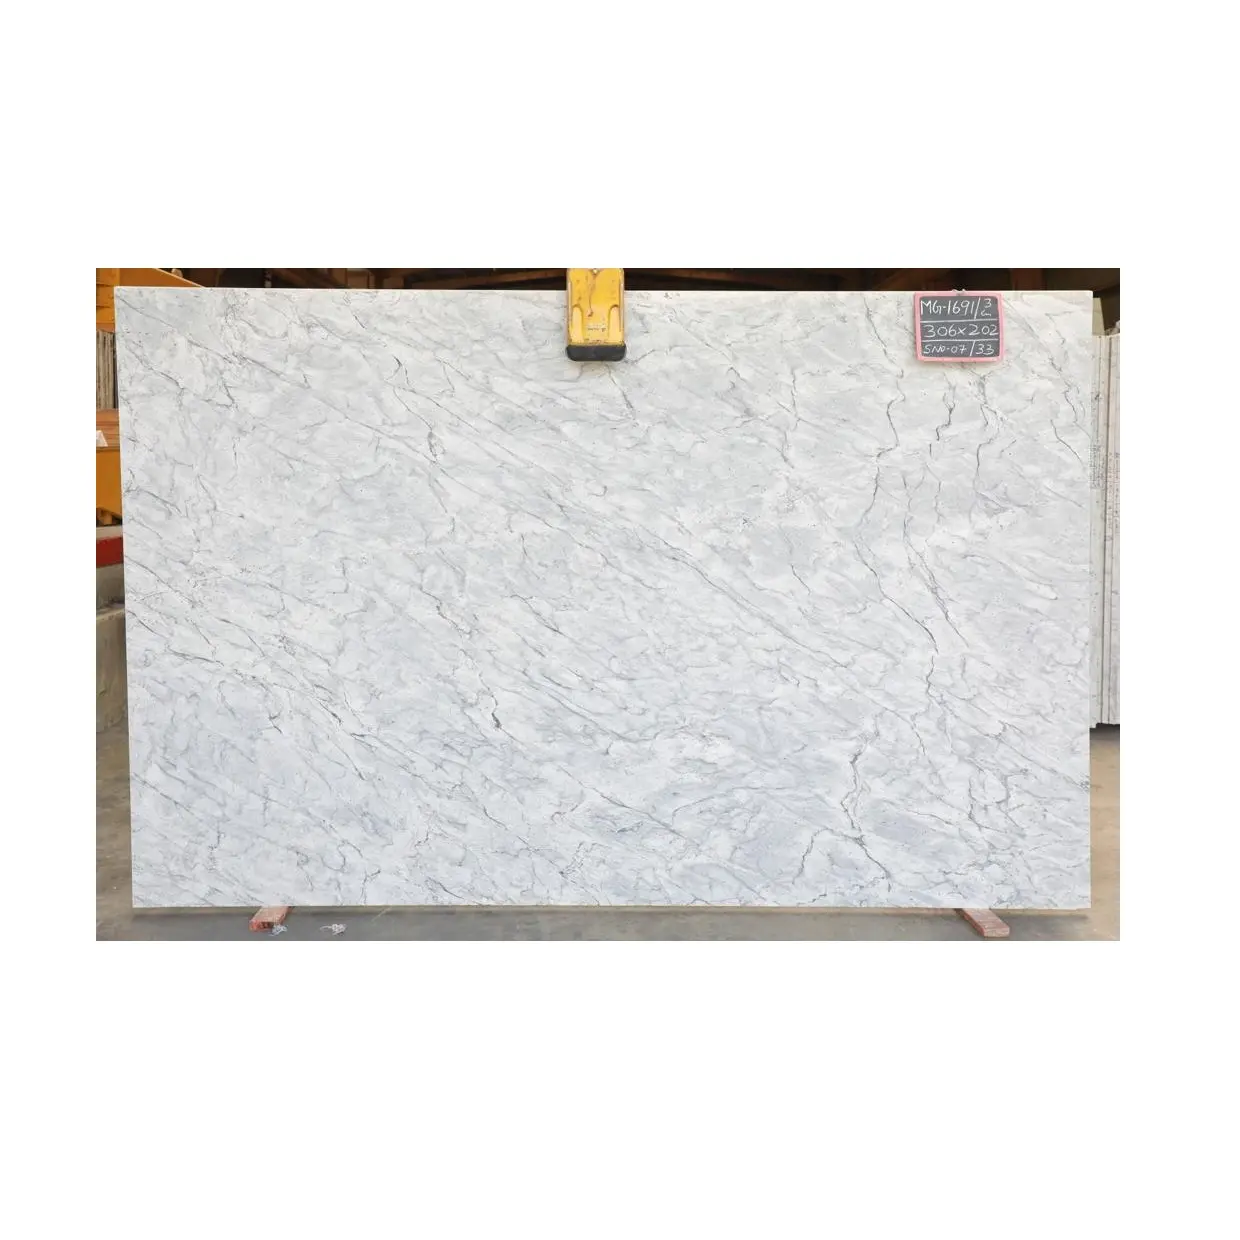 Pietra della lastra di granito bianco della cina di qualità eccellente utilizzata per progettare il tavolo delle piastrelle per pavimenti in granito per interni attraenti